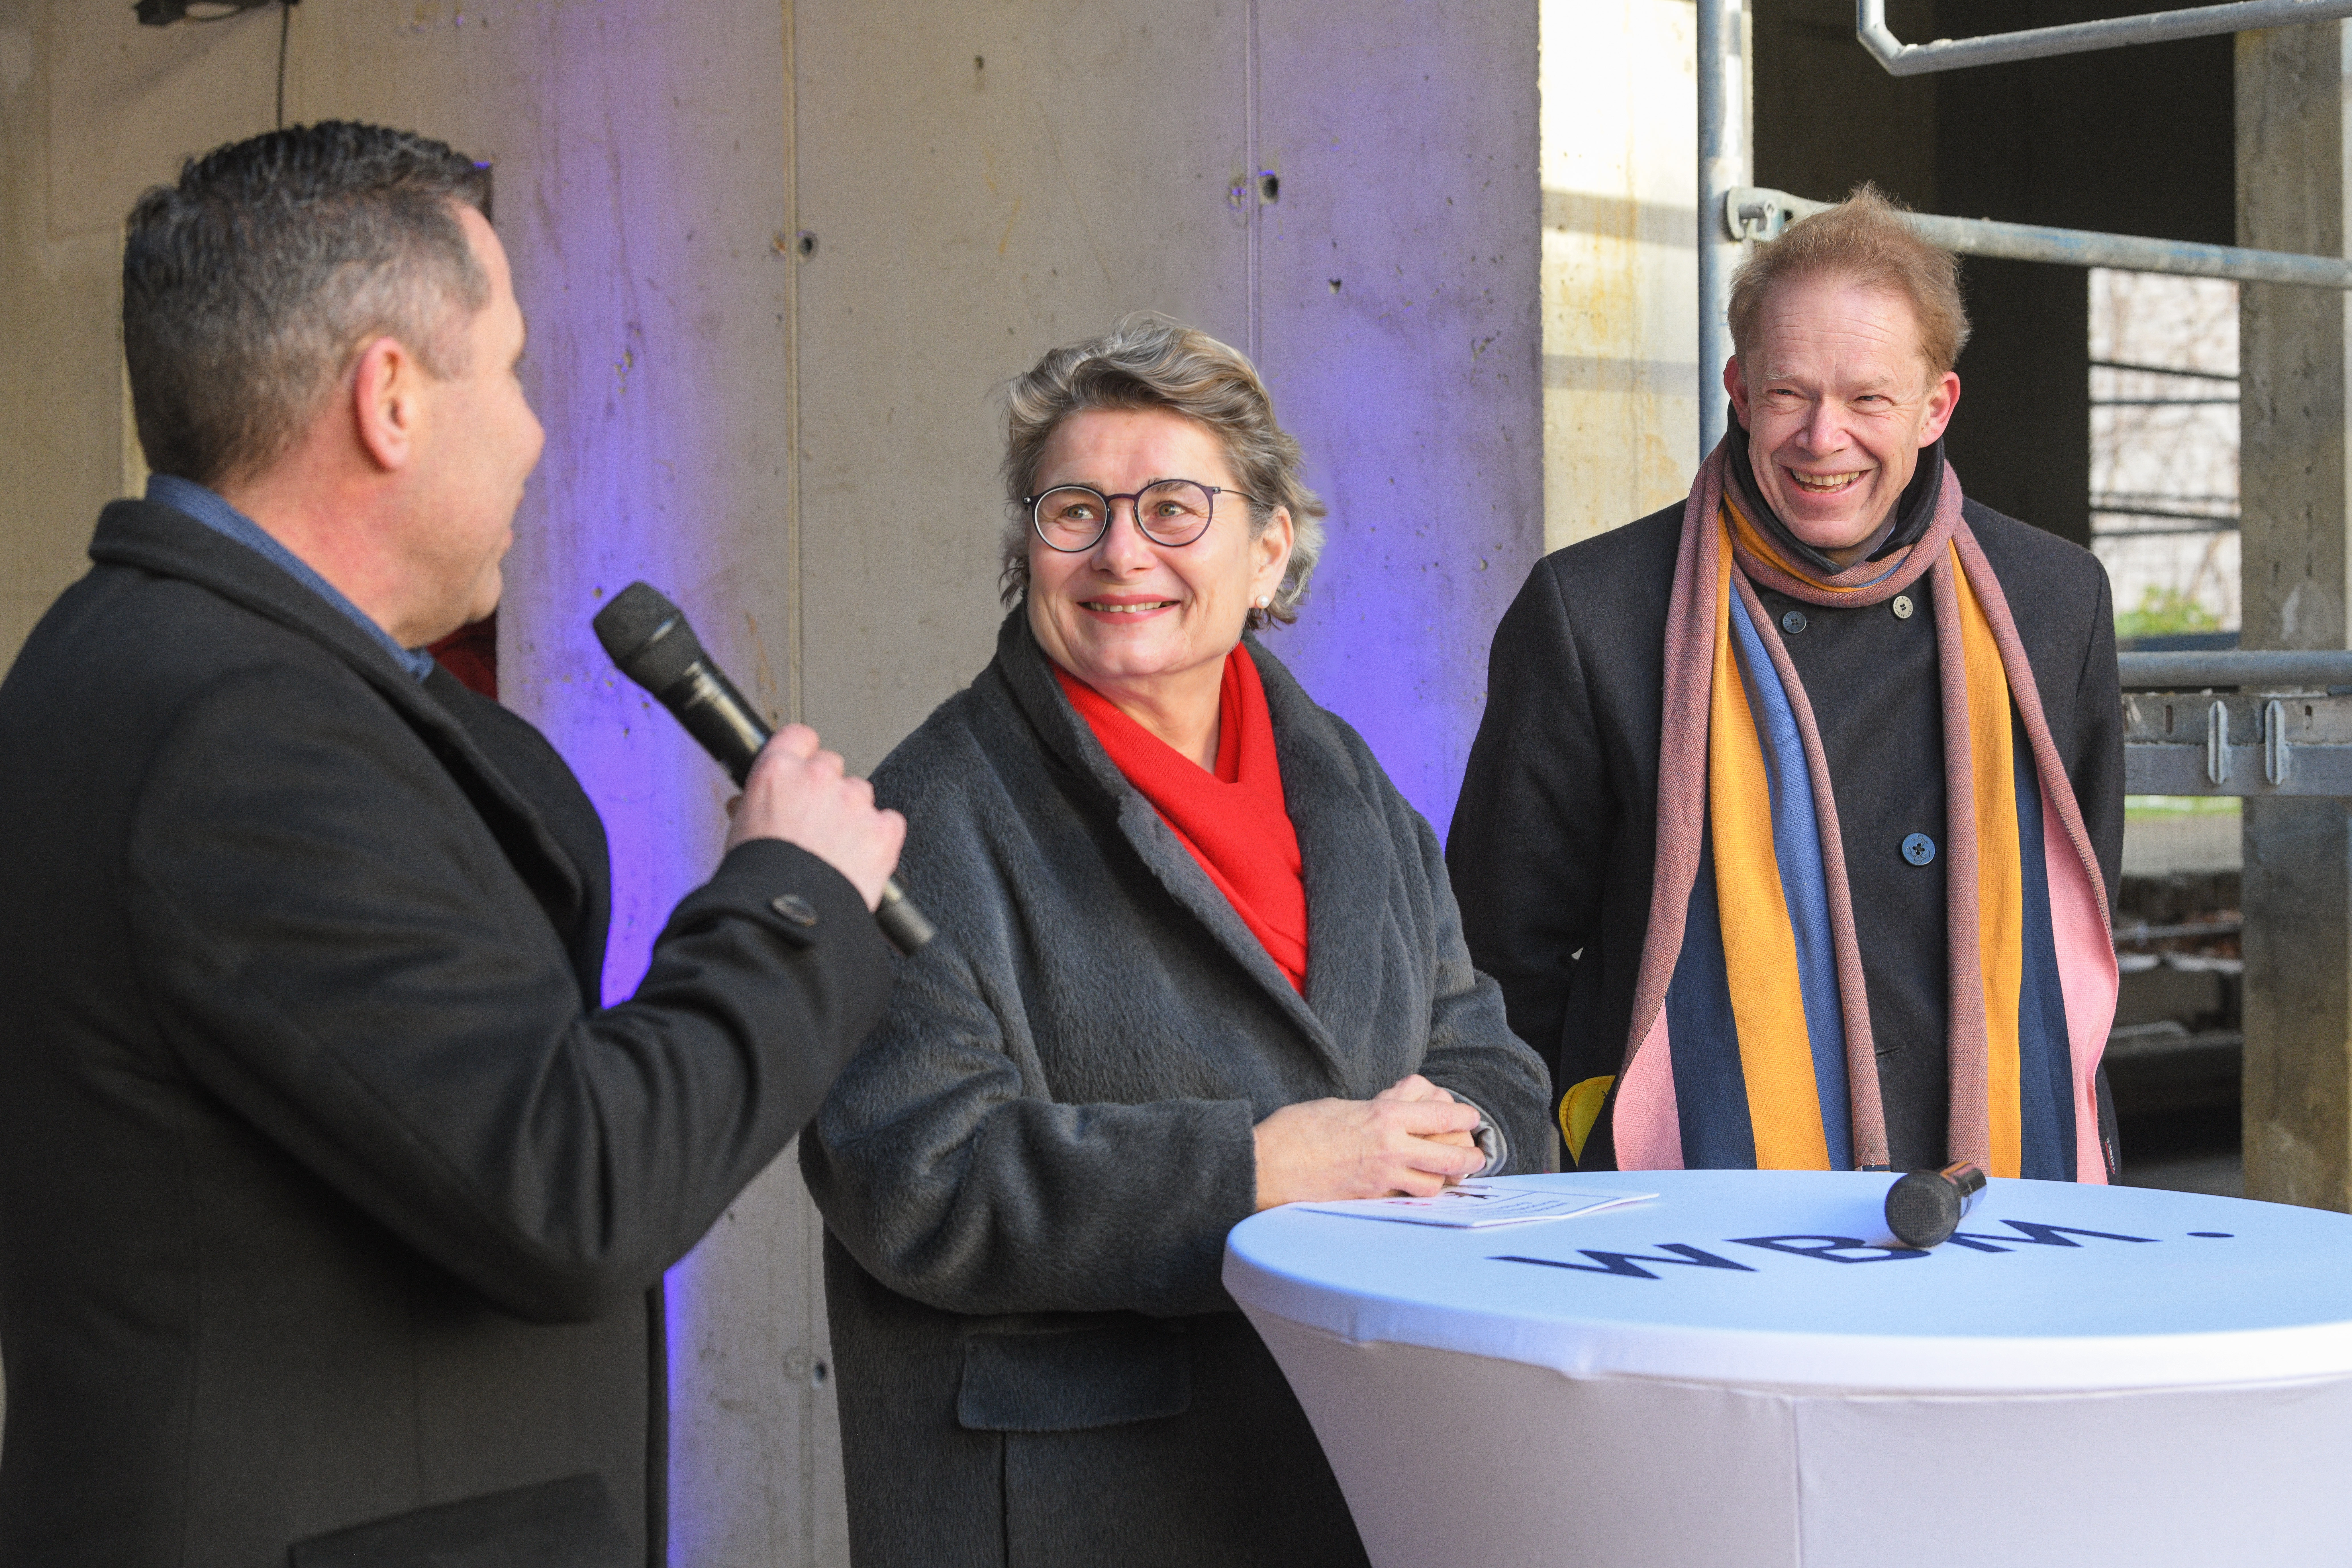 Die Richtfestansprachen von Lars Dormmeyer, Prof. Petra kKahlfeldt und Ephraim Gothe